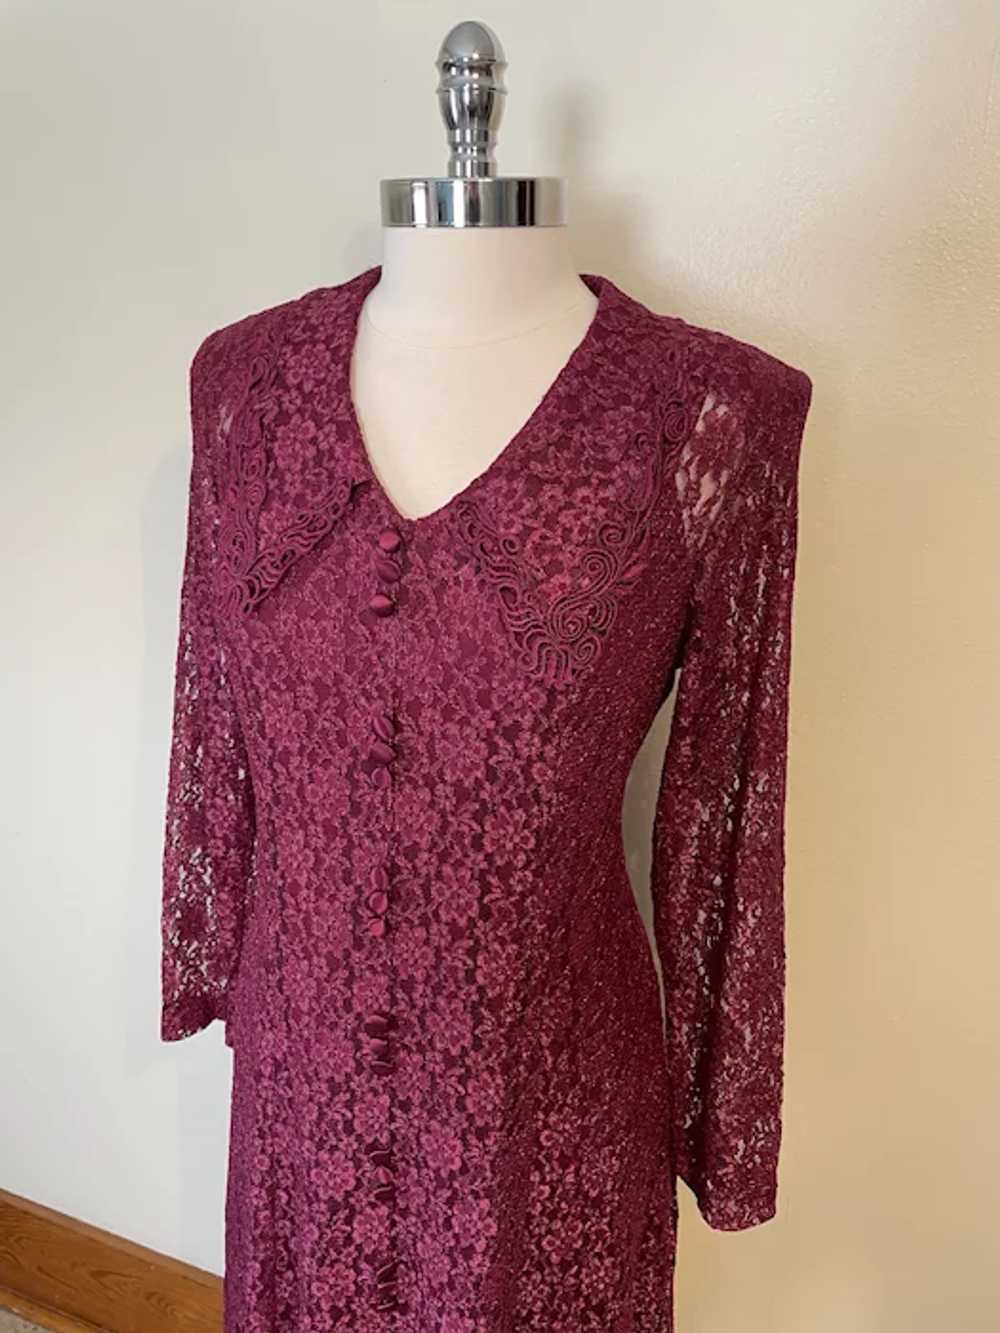 Vintage 1990s Burgundy Grunge Lace Dress - image 2